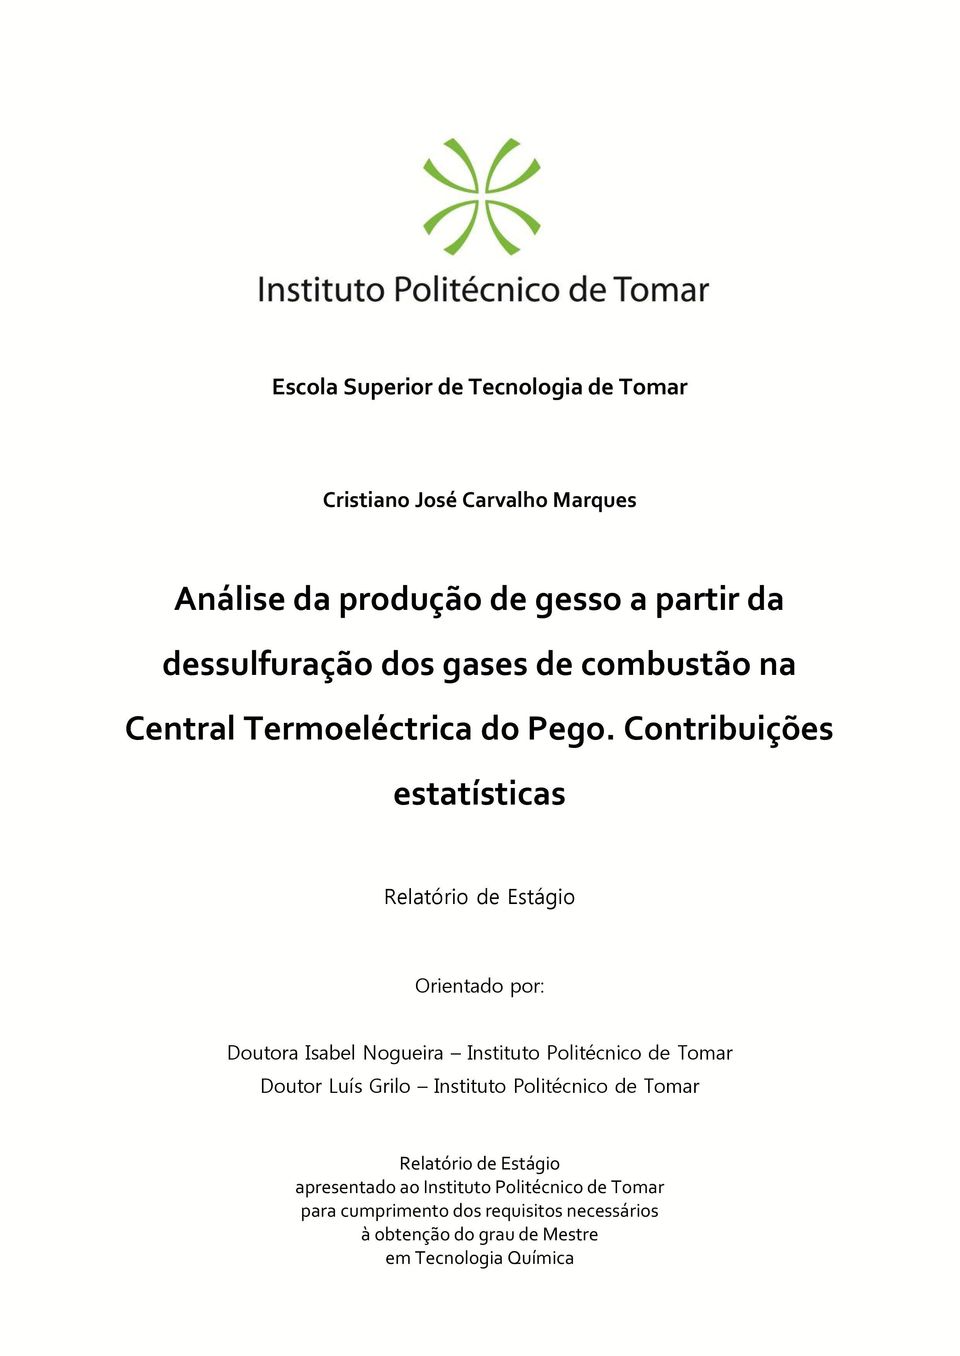 Contribuições estatísticas Relatório de Estágio Orientado por: Doutora Isabel Nogueira Instituto Politécnico de Tomar Doutor